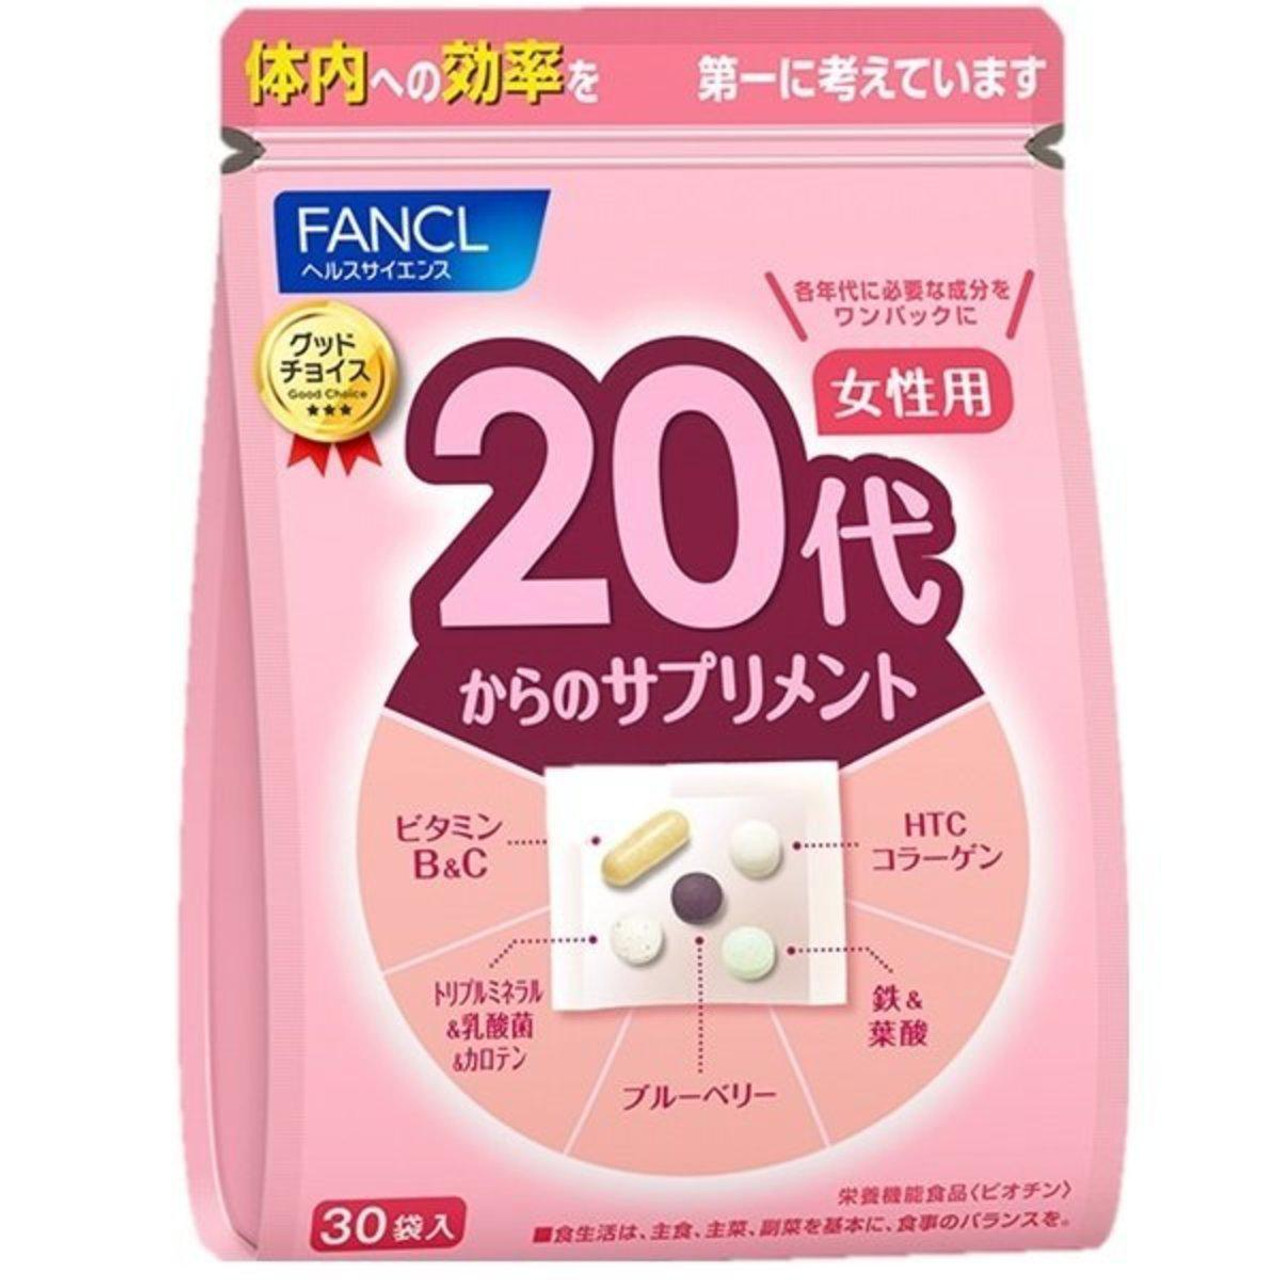 日本fancl 新版女性综合营养素维生素代 适合岁 30岁 30袋 1包 Beauty Corner 美妍角落